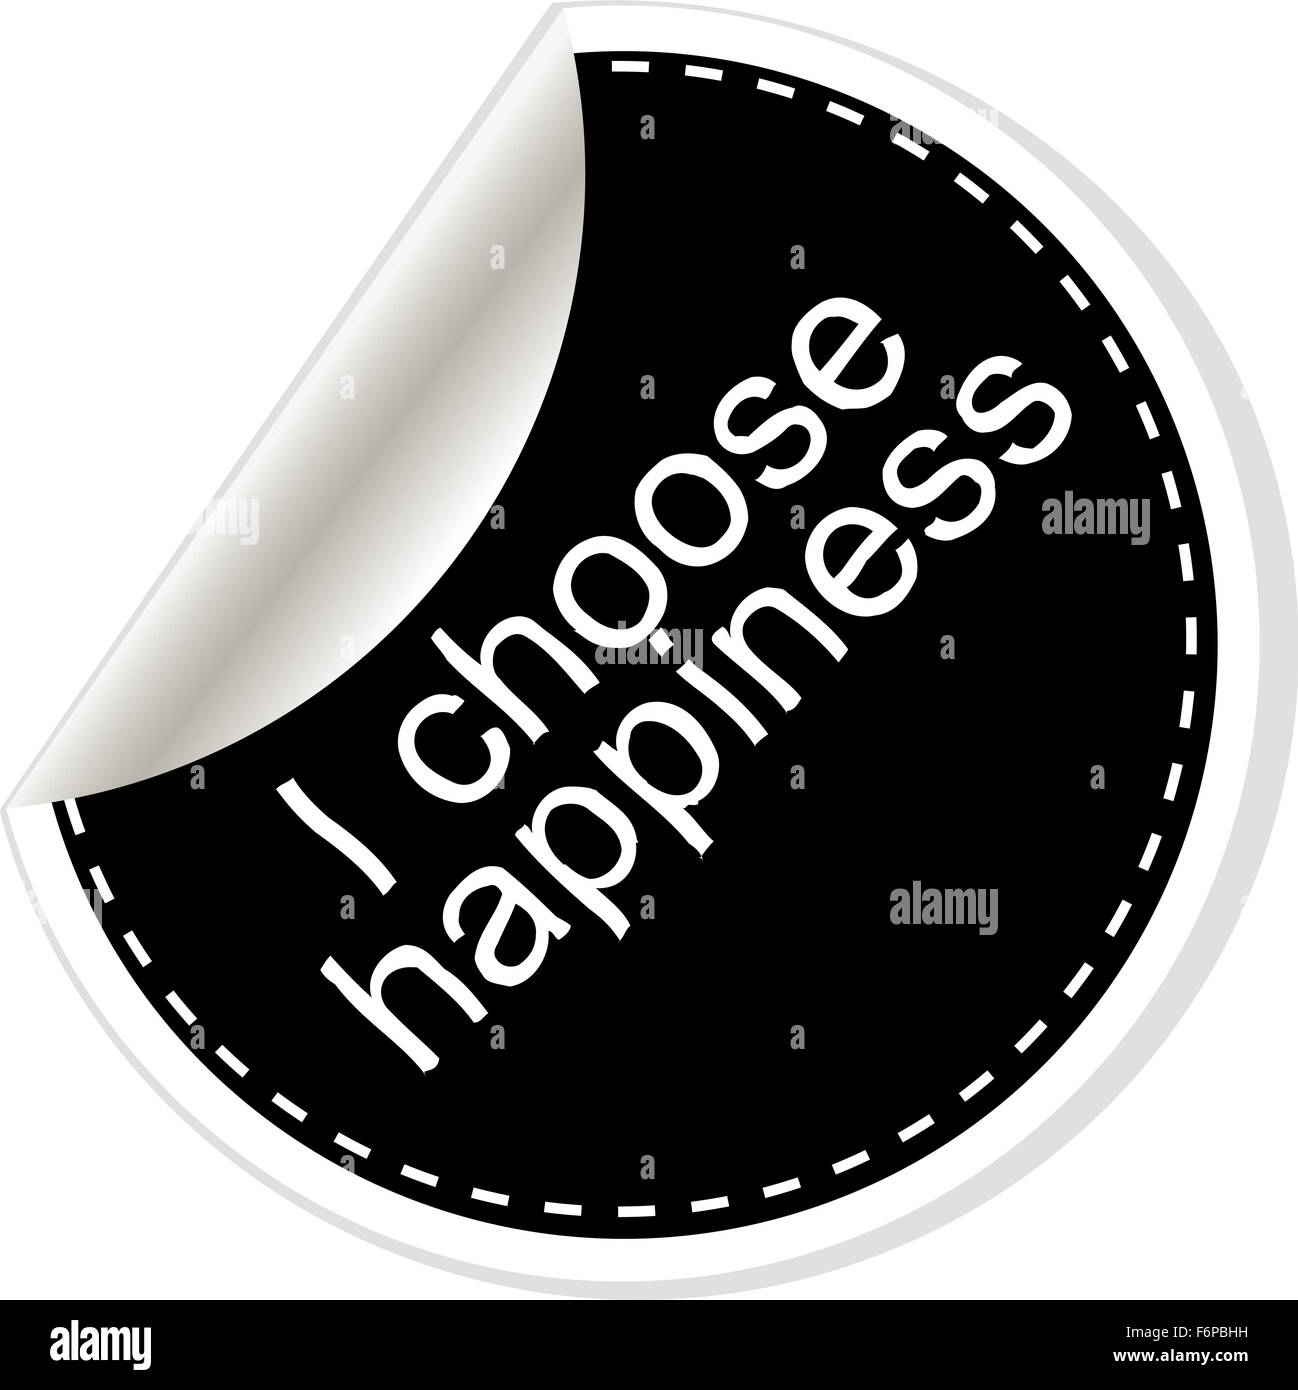 Ich wähle Glück. Inspirierend, motivierend Zitat. Einfach Trendiges Design. Schwarz / weiß-Sticker. Stockfoto